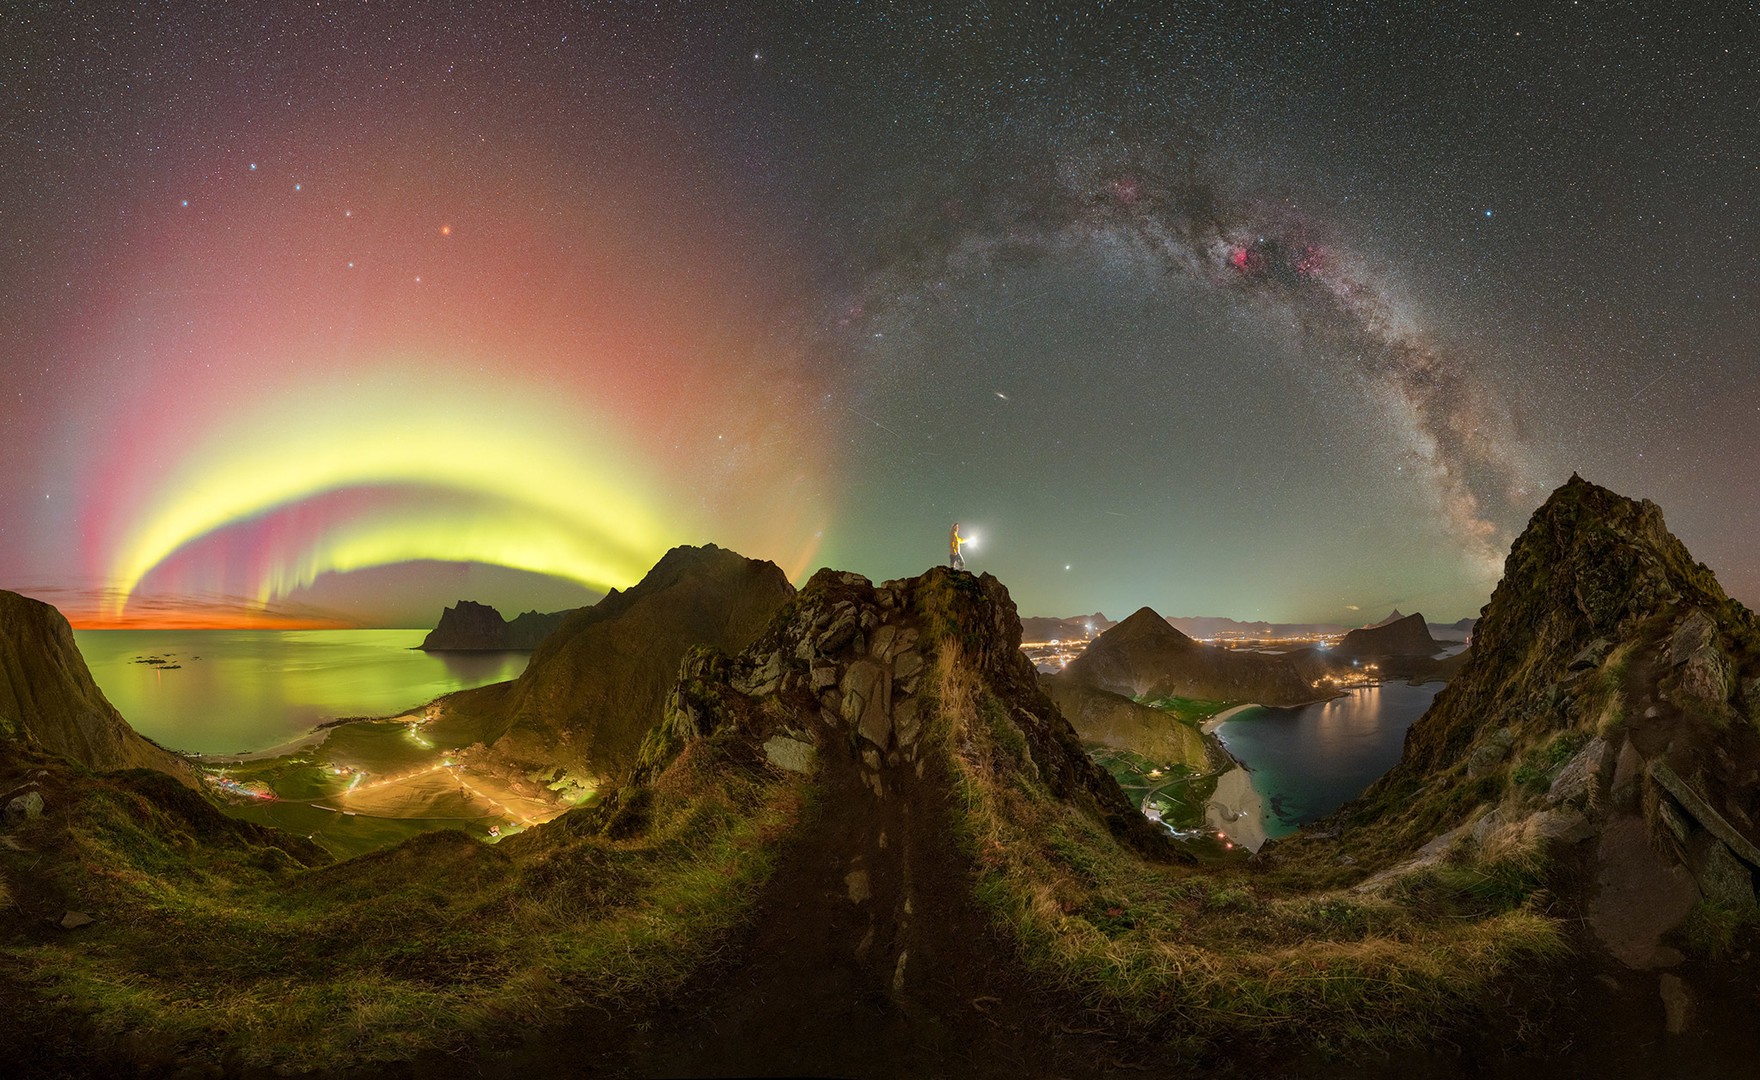 O raro vislume das auroras boreais nas melhores imagens de 2023